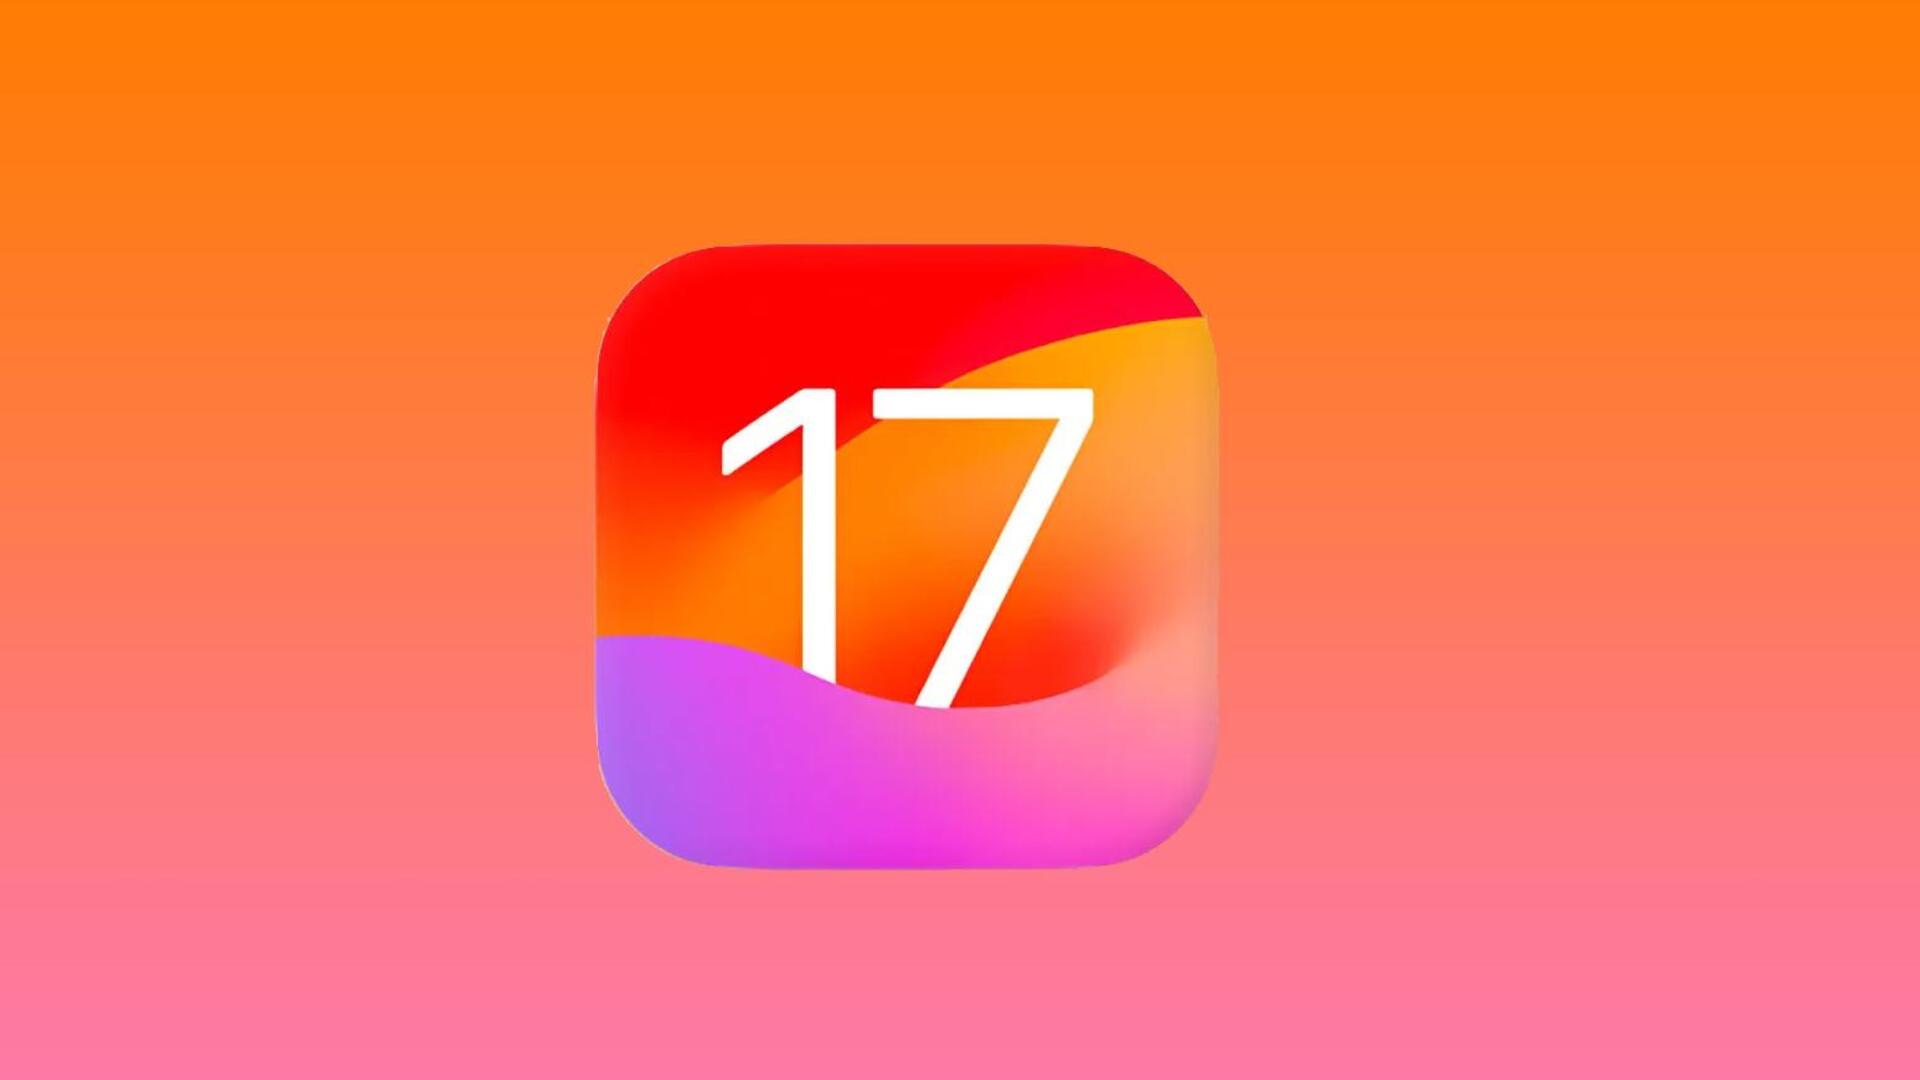 iOS 17 इसी हफ्ते यूजर्स के लिए होगा उपलब्ध, मिलेंगे ये बेहतरीन फीचर्स